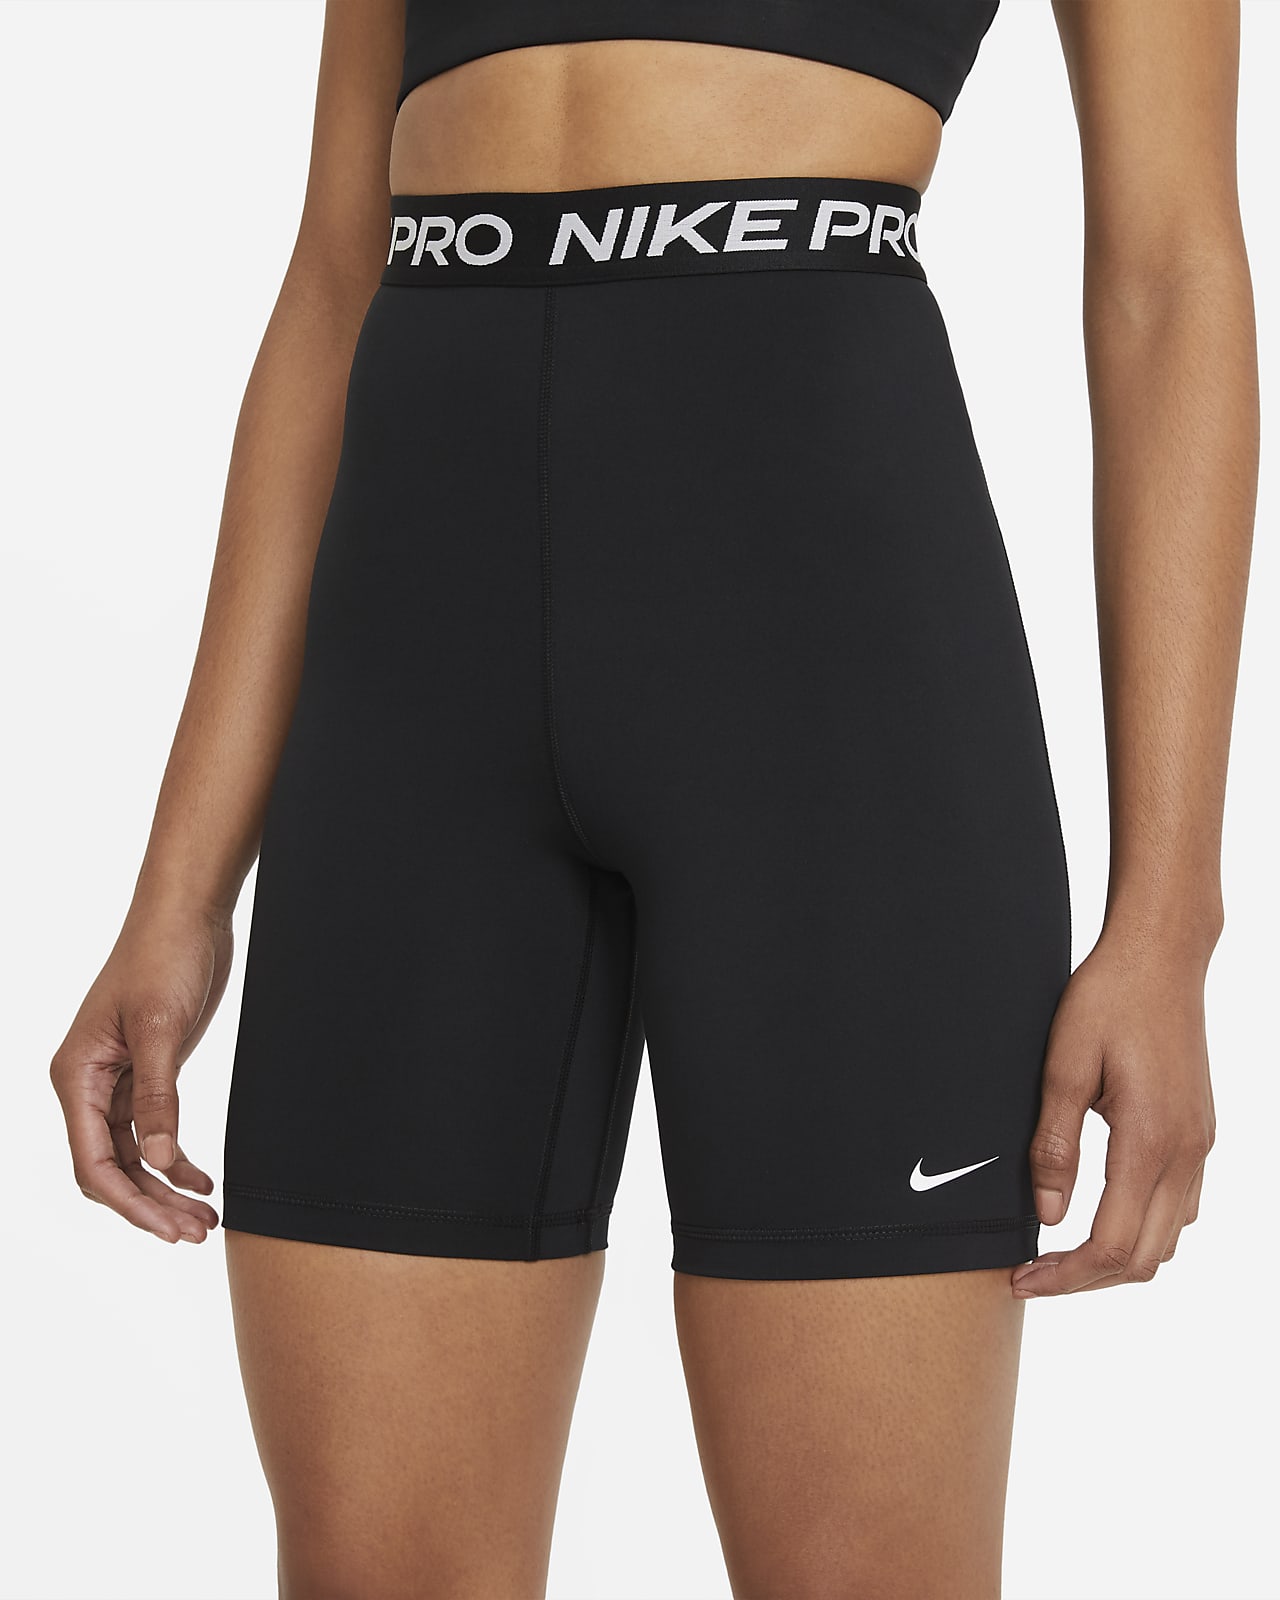 Nike Pro 365-shorts cm) med talje til Nike DK